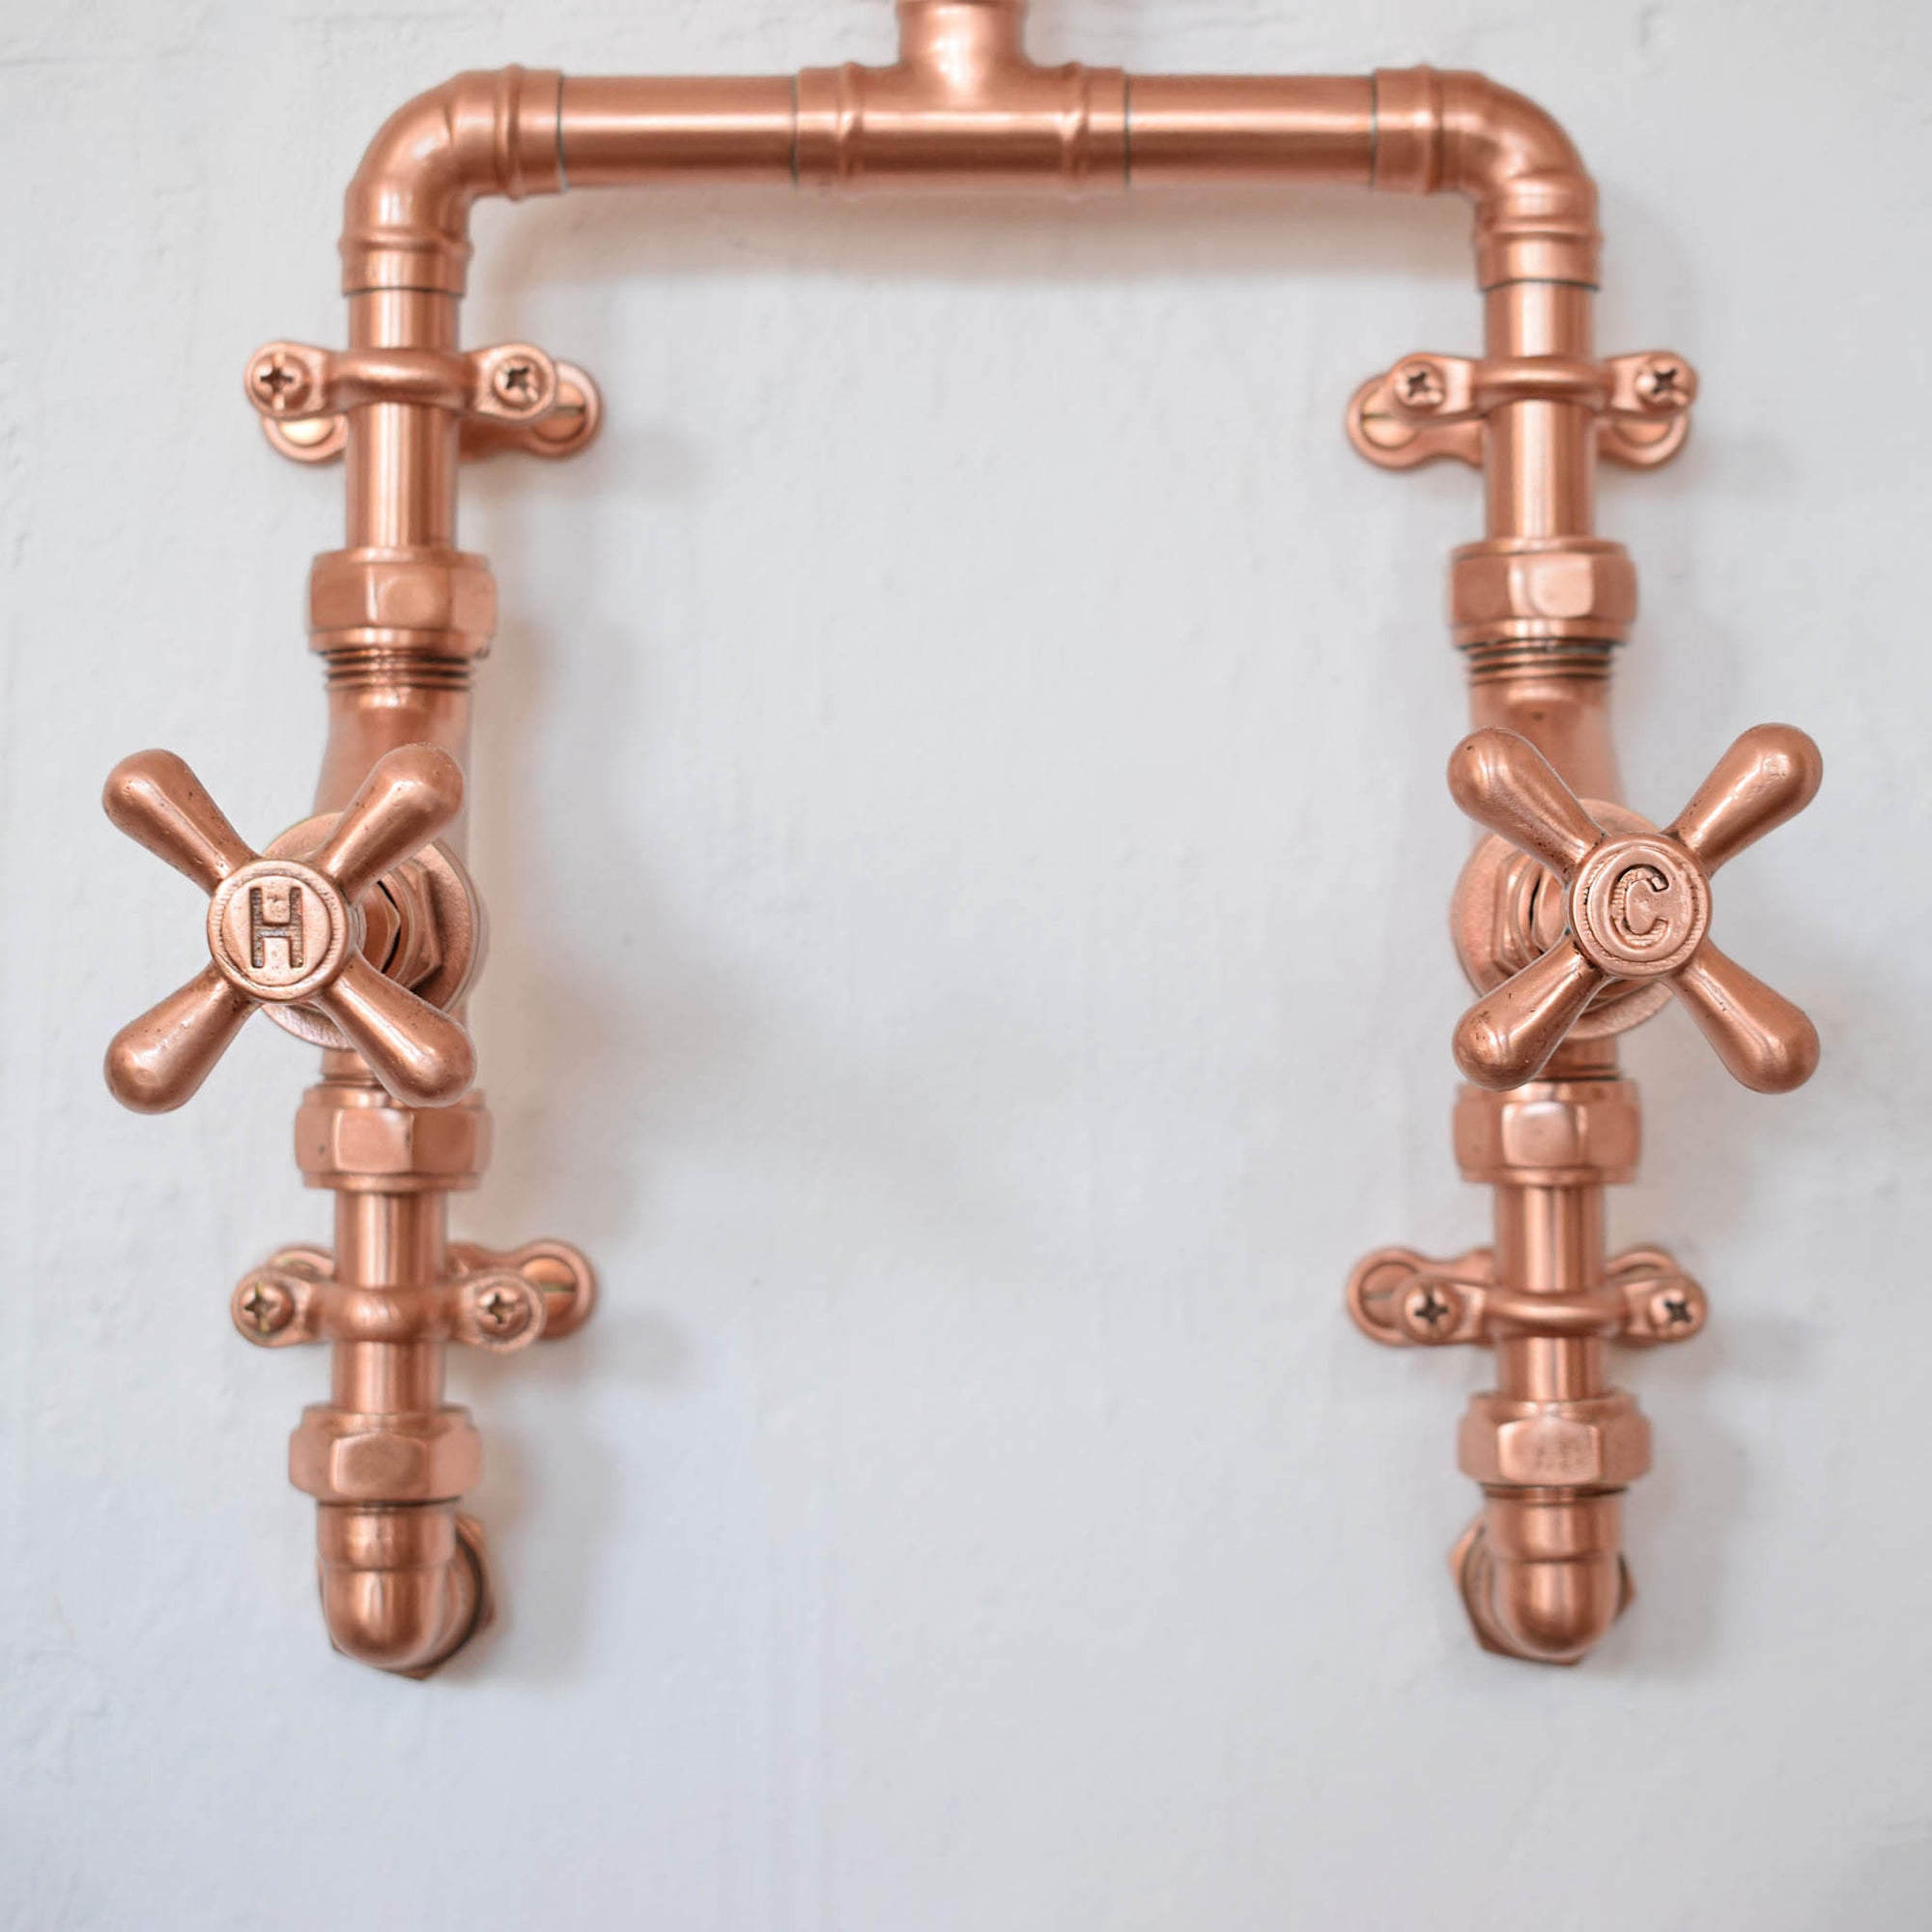 copper shower exposed design. custom shower available online